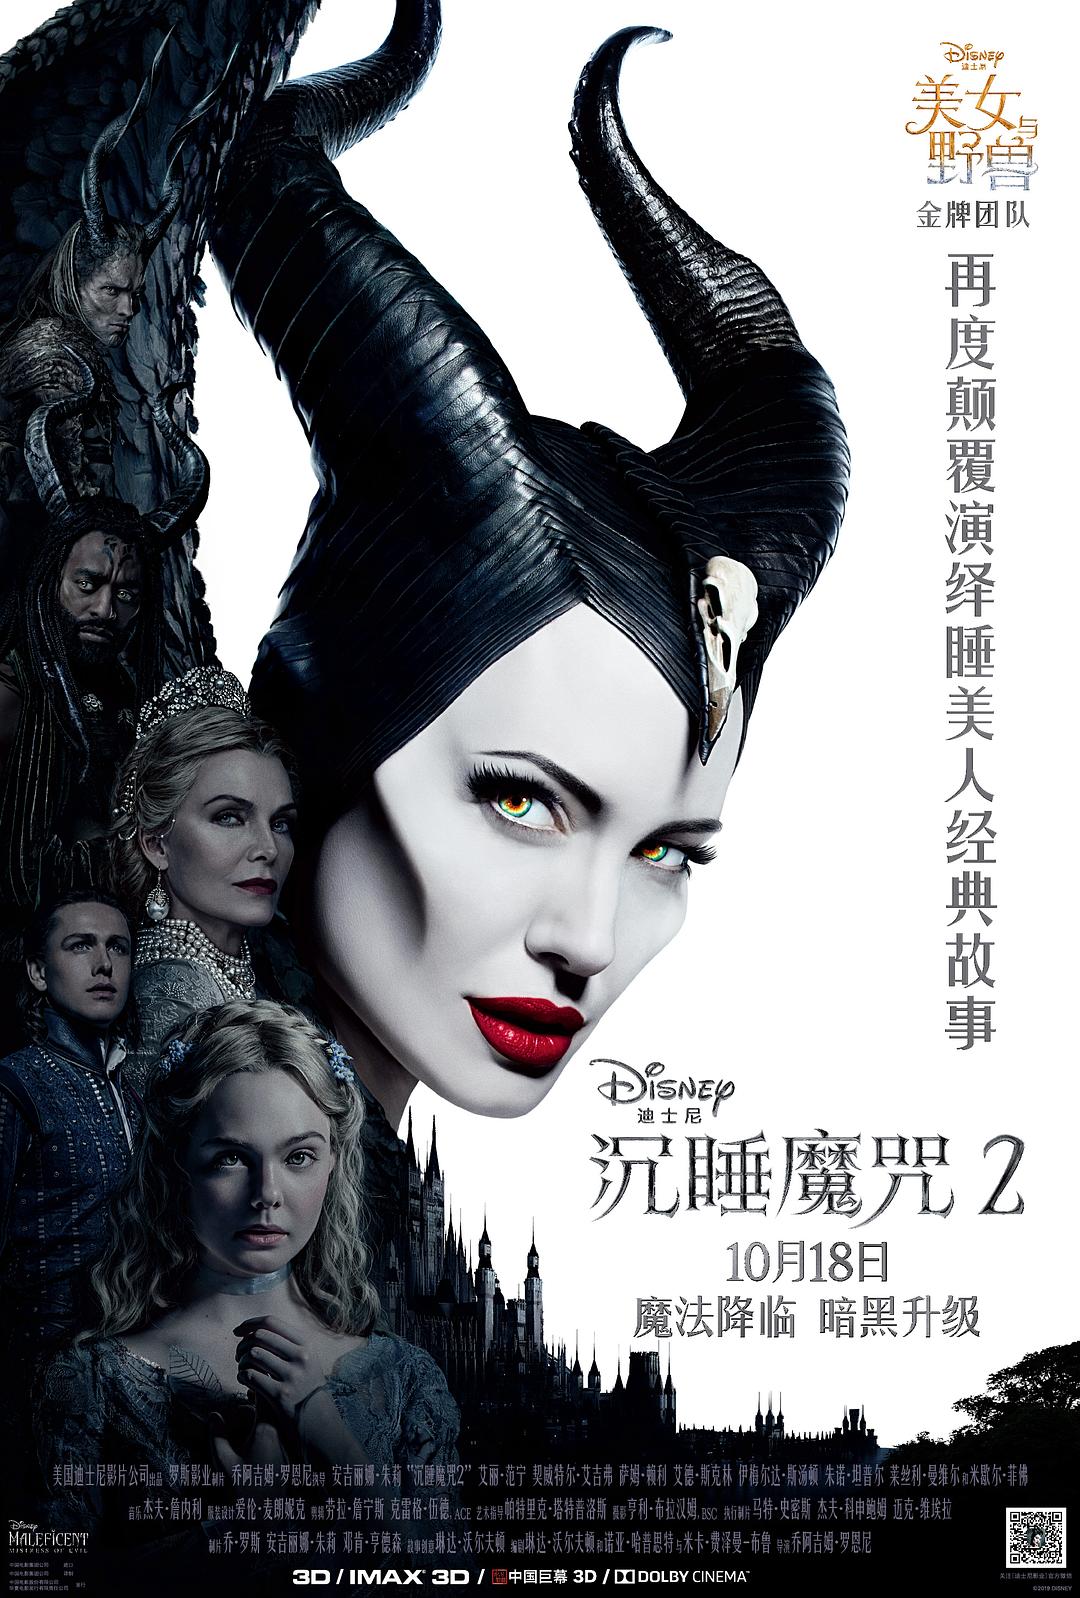 [沉睡魔咒2].Maleficent.Mistress.of.Evi.2019.UHD.BluRay.2160p.HEVC.TrueHD.7.1-MTeam    99.54G-3.jpg